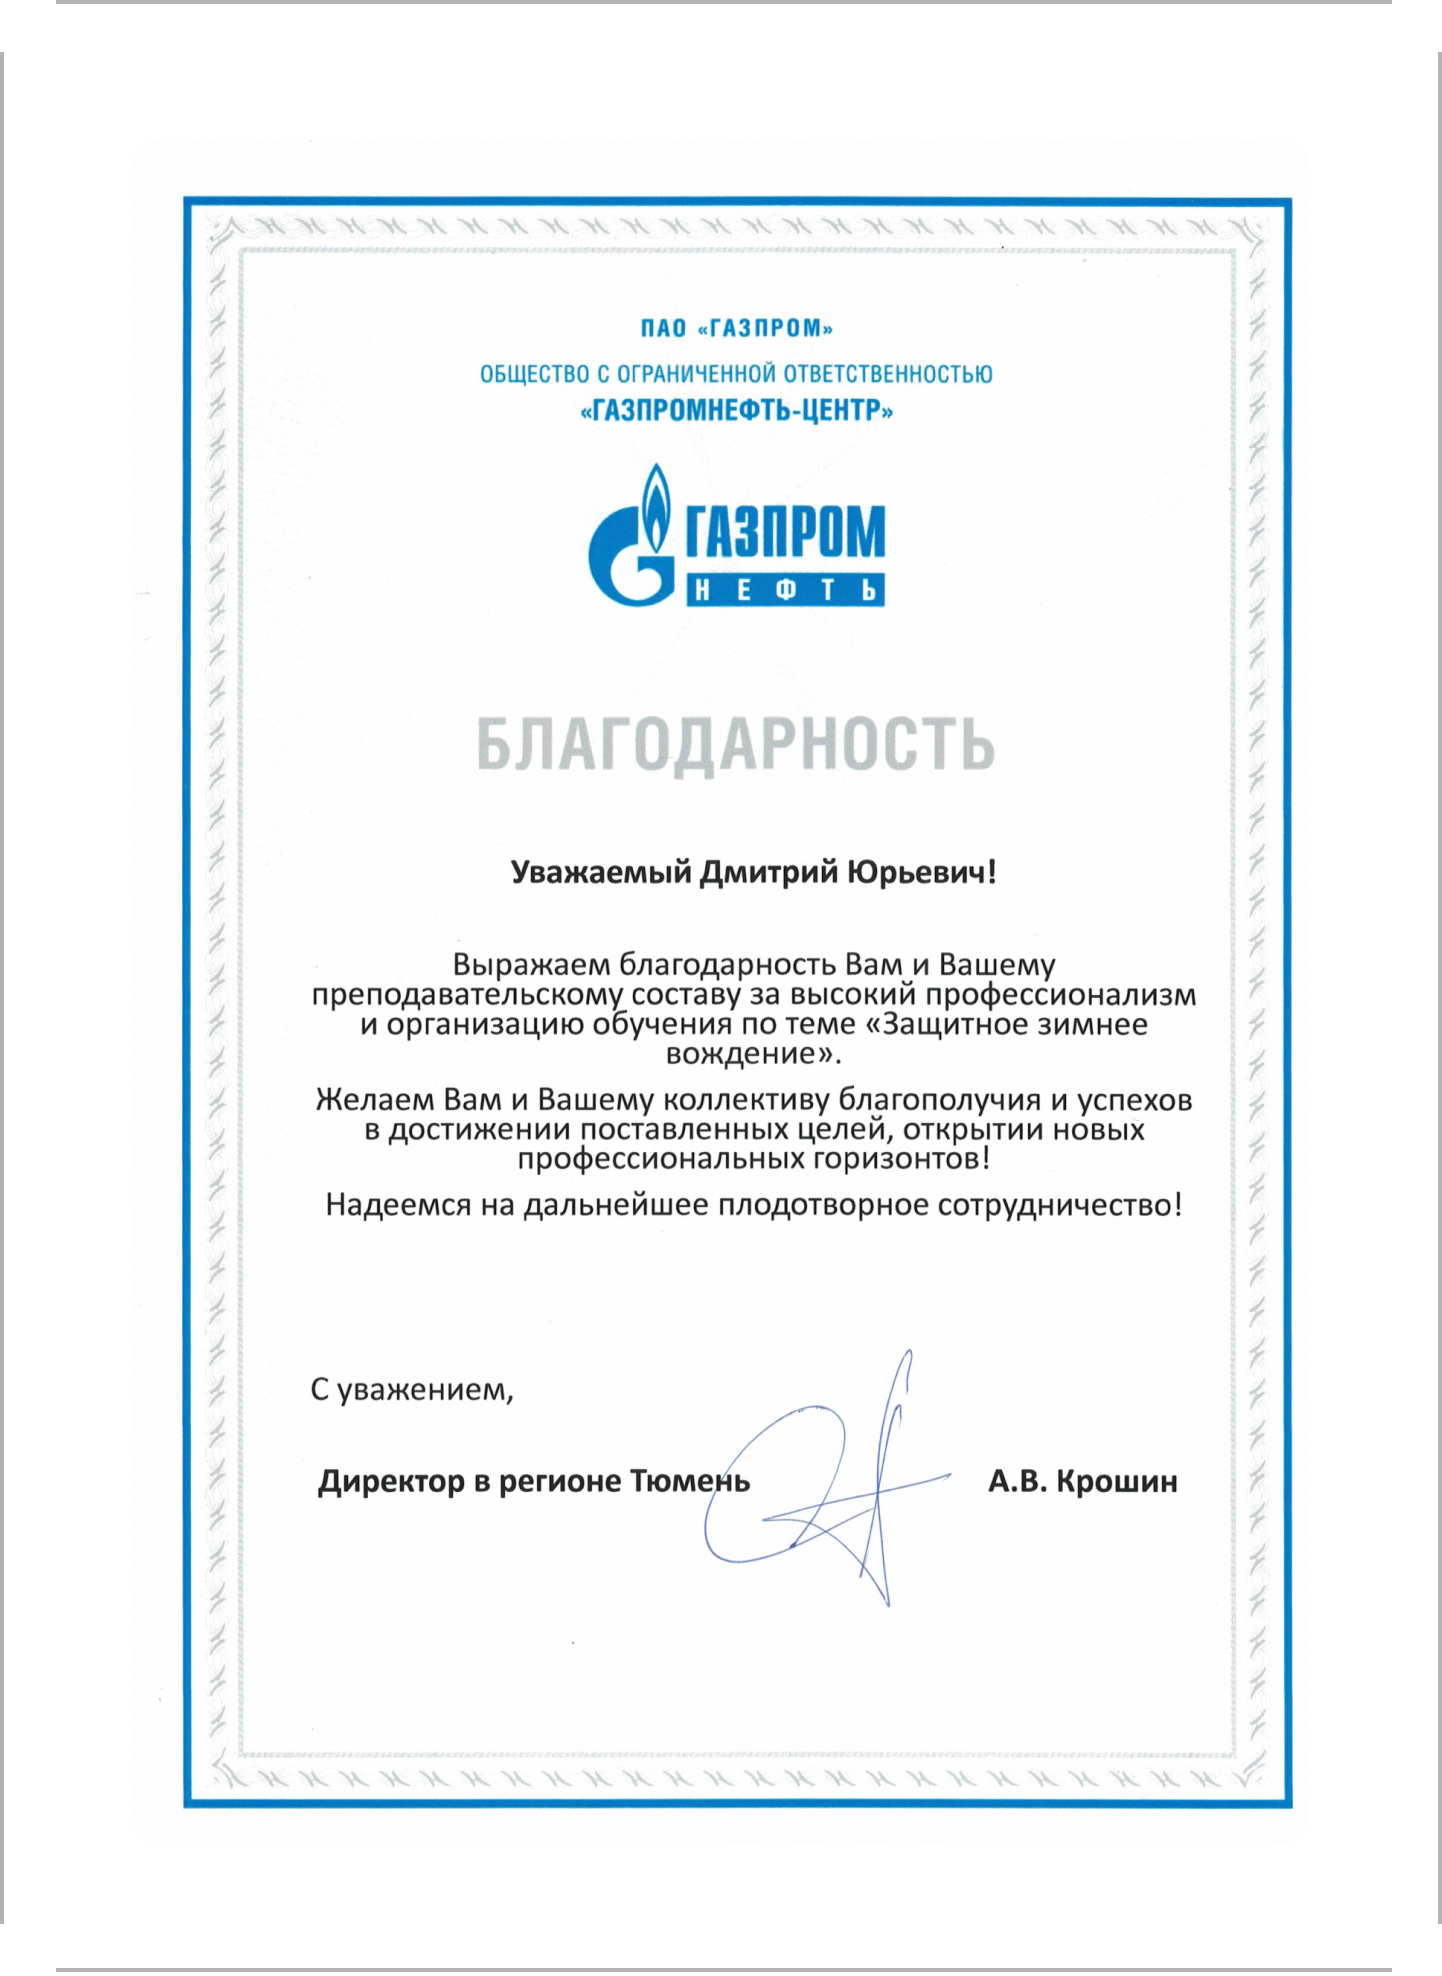 Благодарственное письмо от ПАО "Газпром"